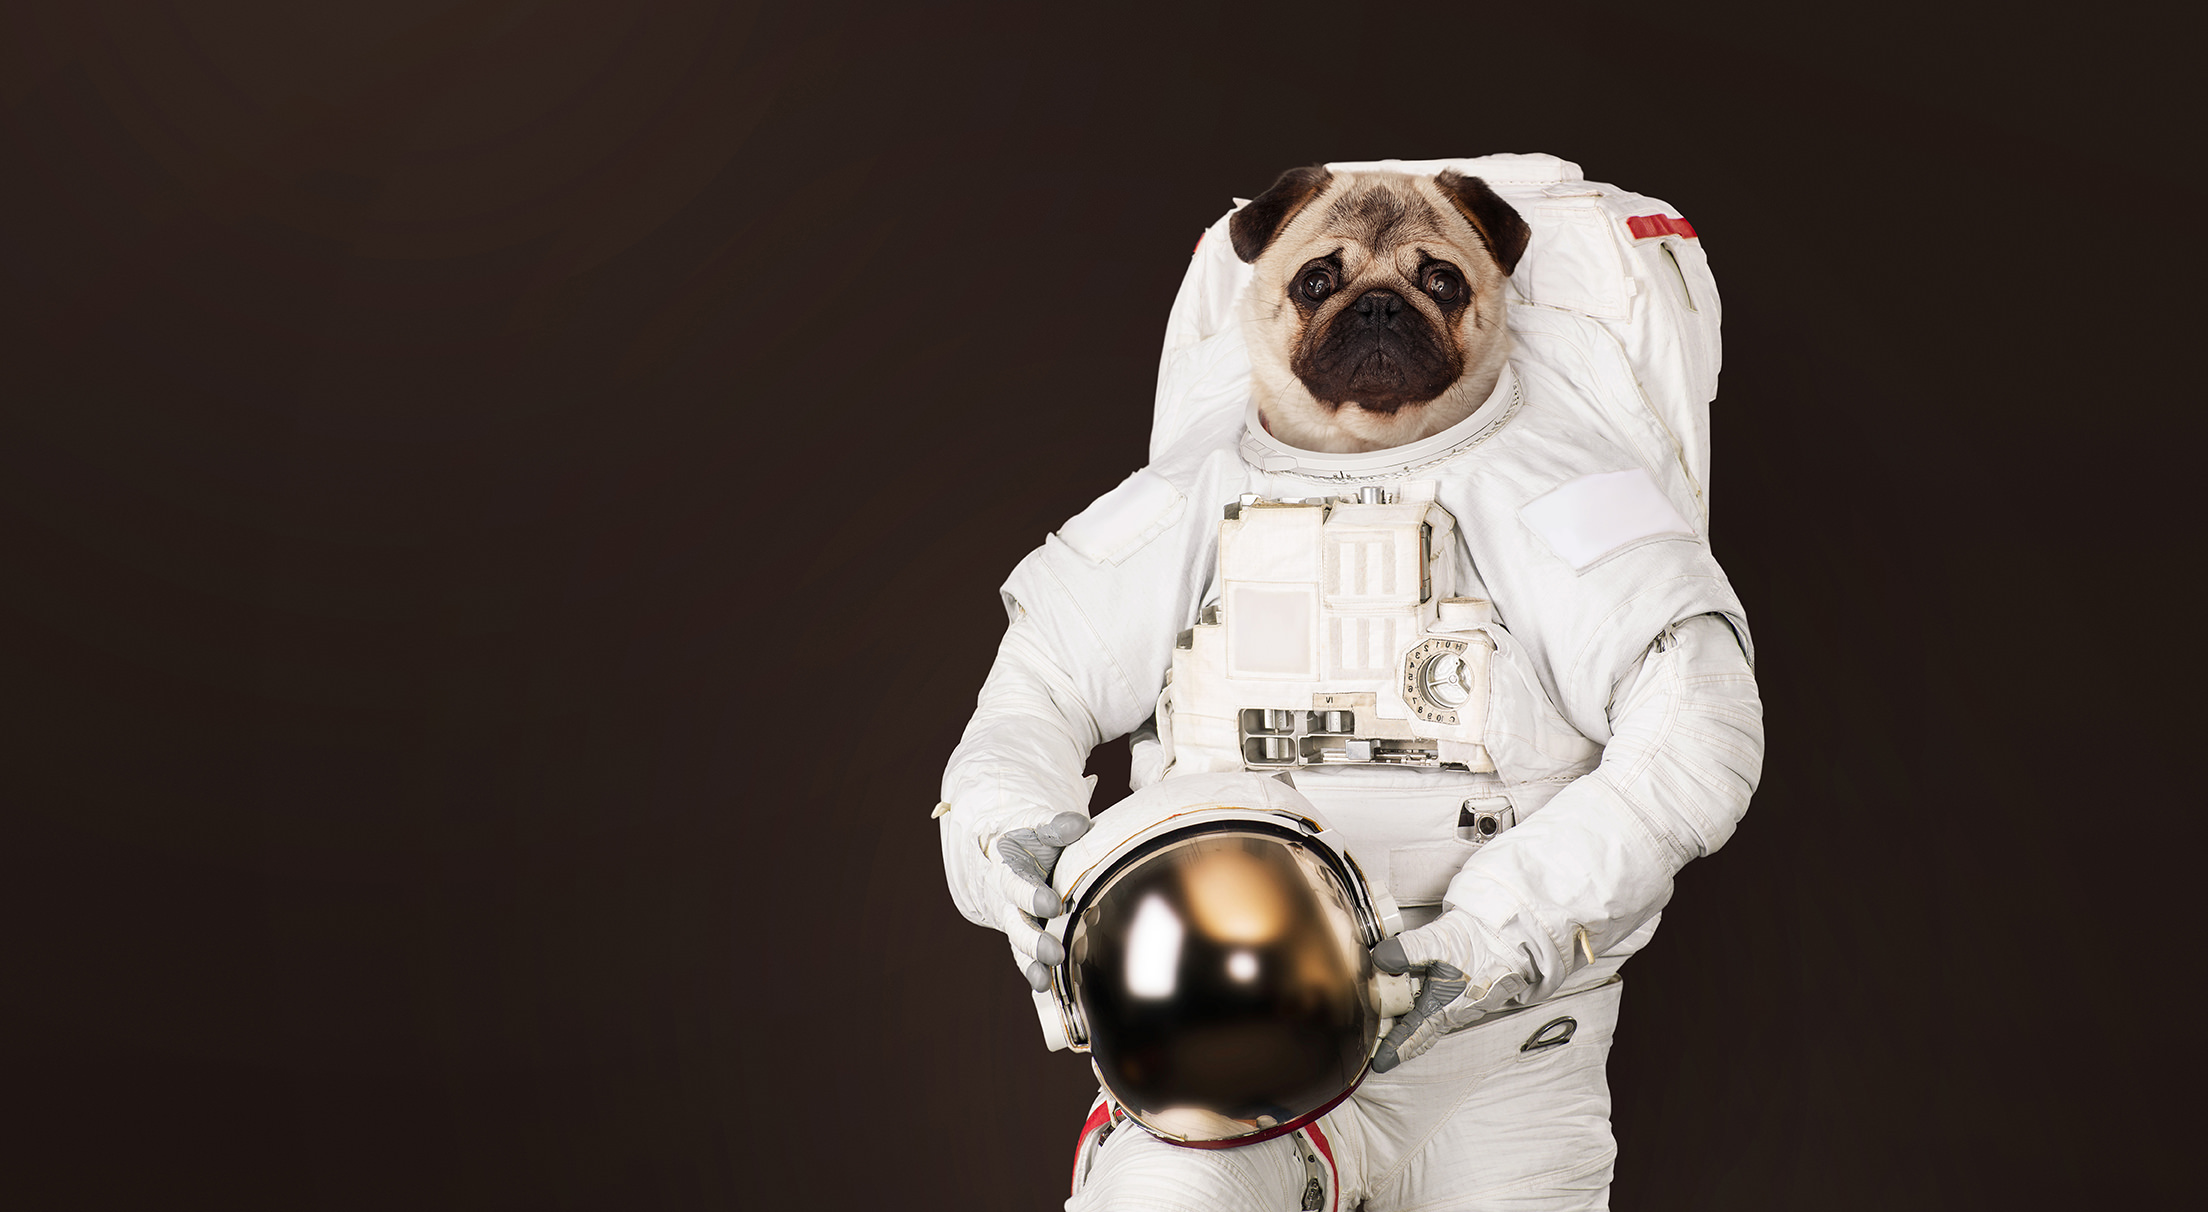 Astronaut mit Helm in der Hand vor einem schwarzen Hintergrund. Statt eines menschlichen Kopfes hat er jedoch einen Hundekopf.